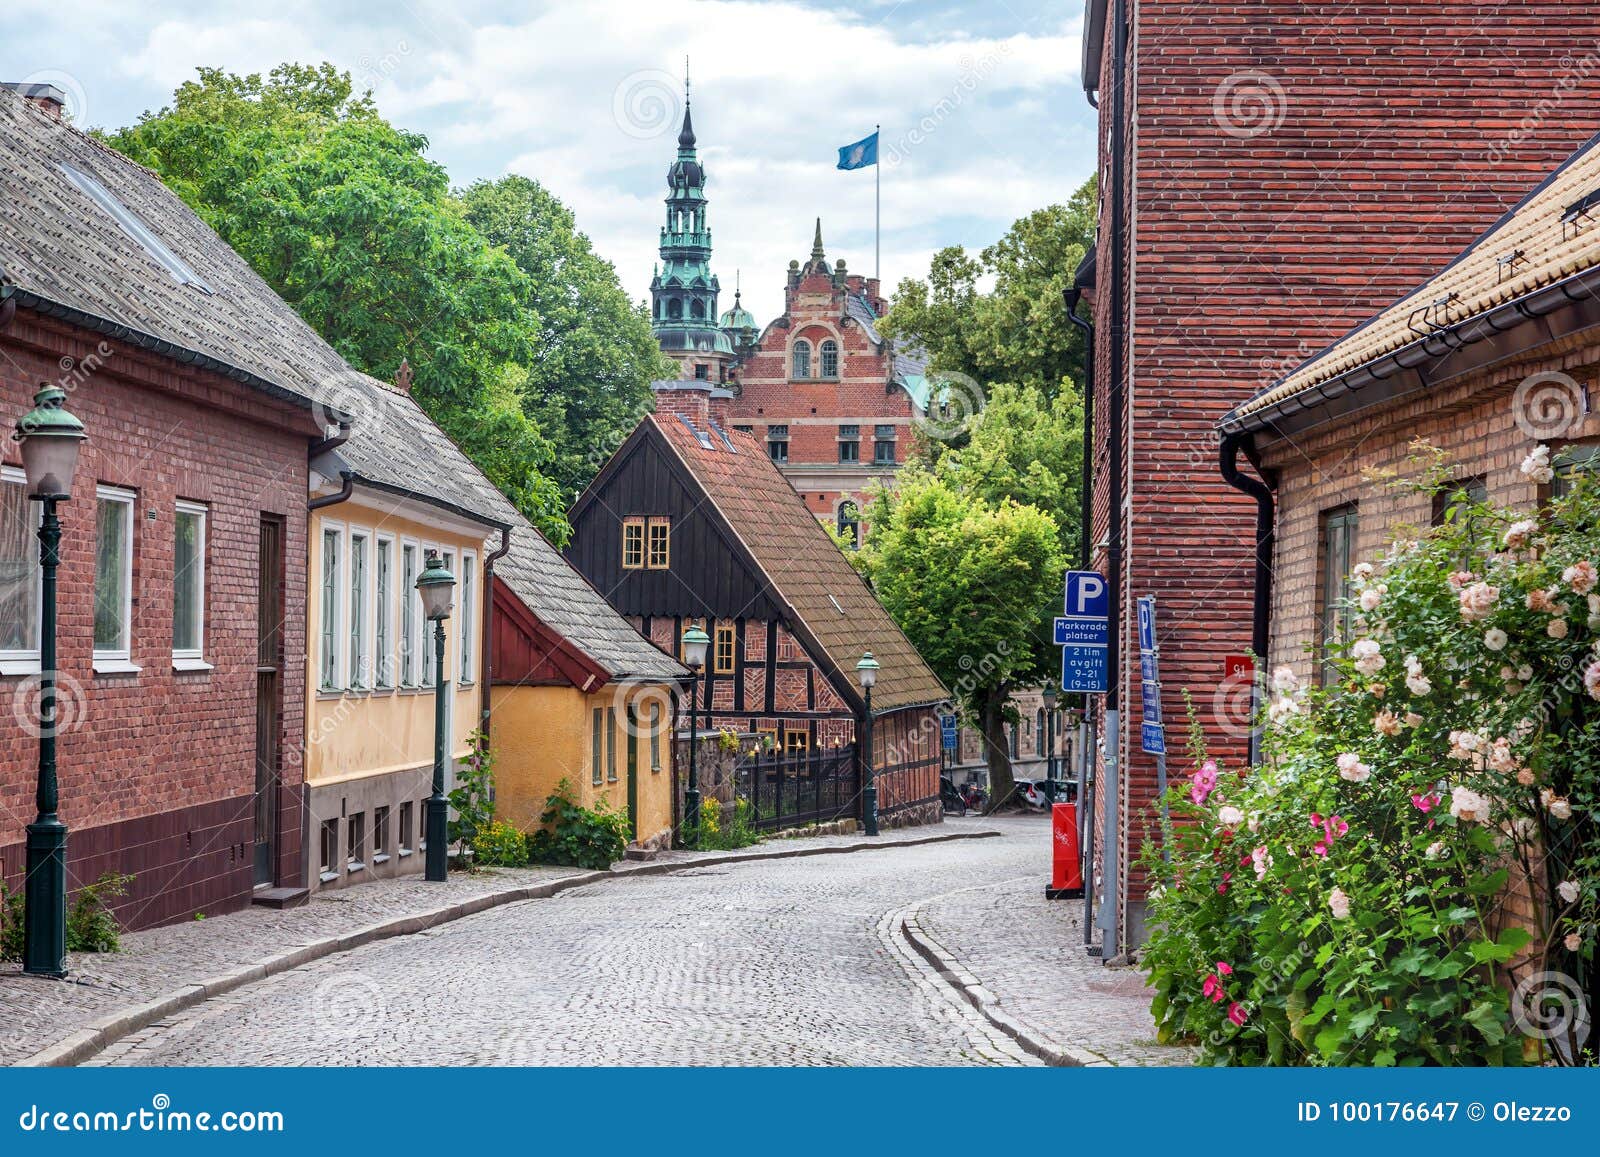 Arquitetura escandinava imagem de stock. Imagem de azul - 54953387